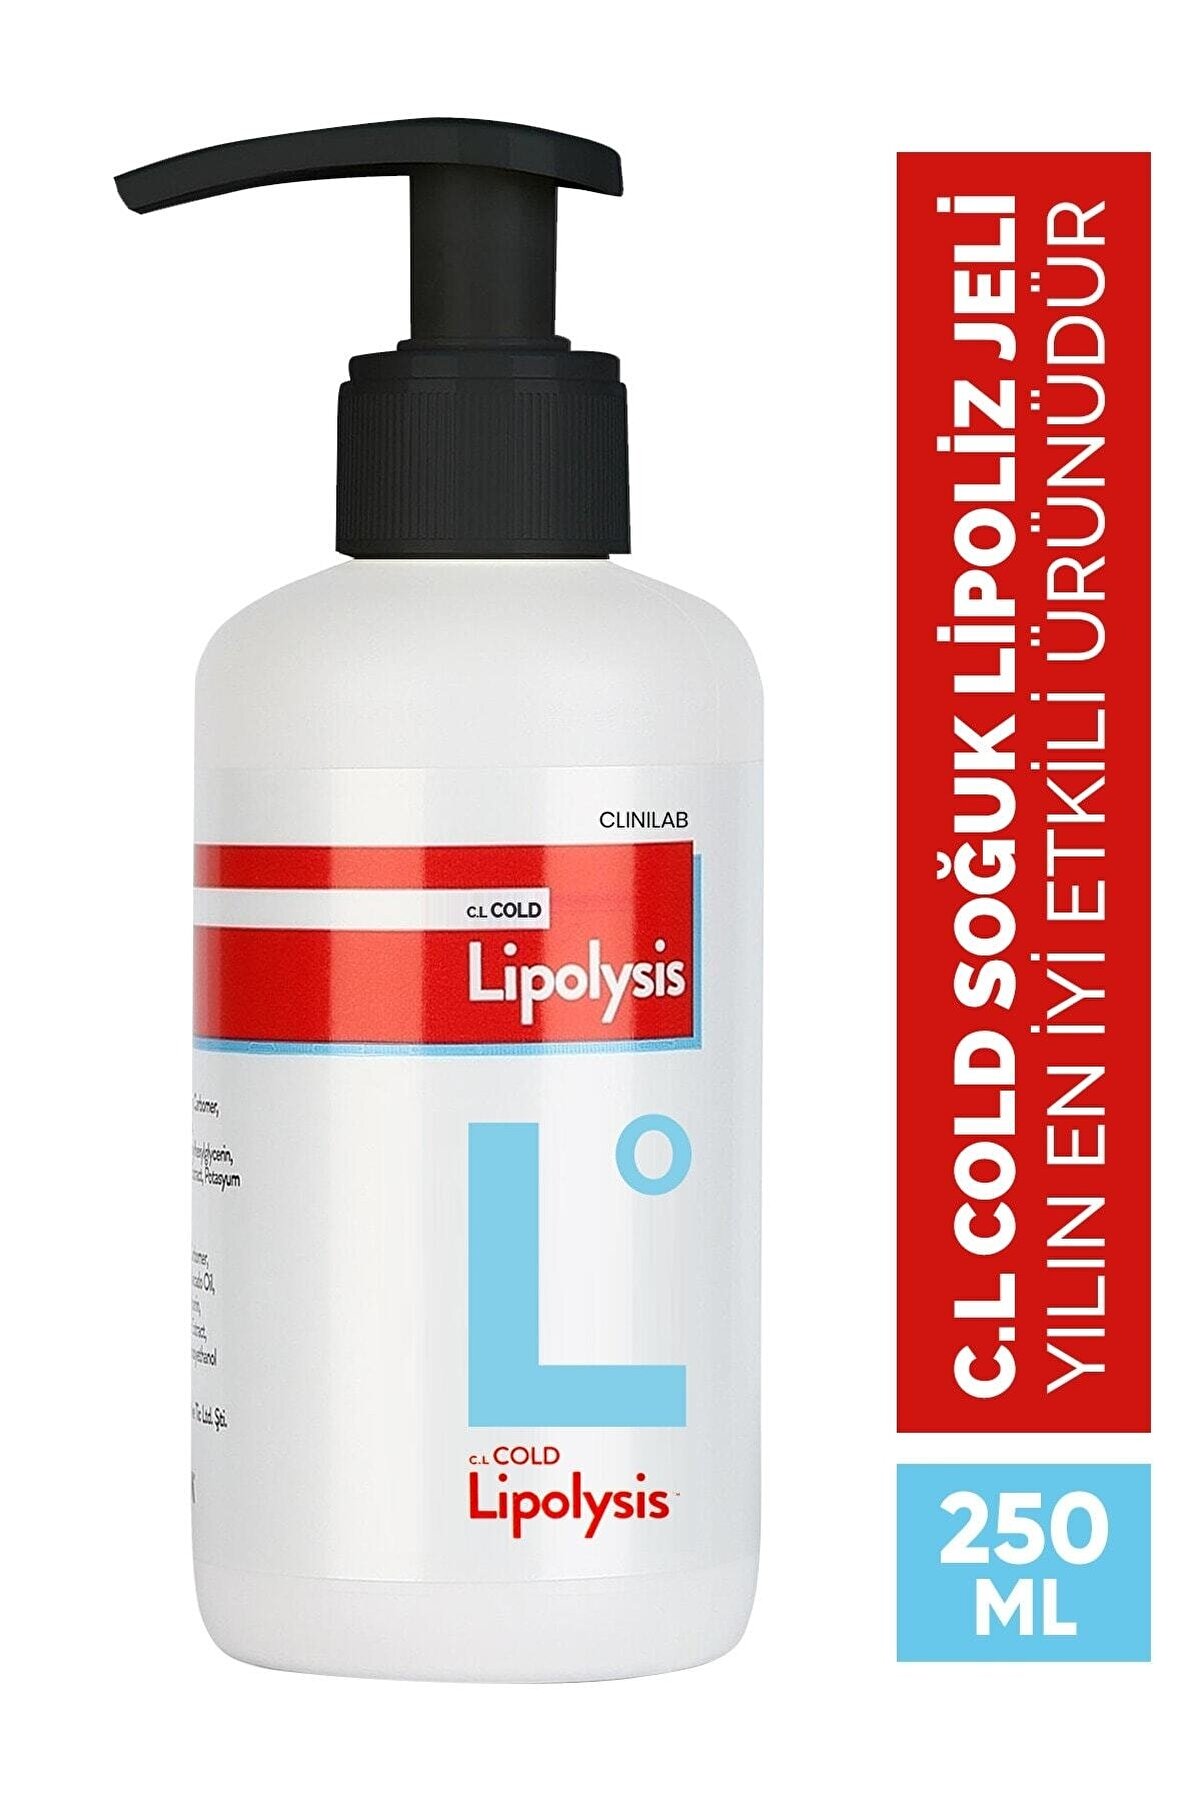 c.l. cold lipolysis Cold 250 ml